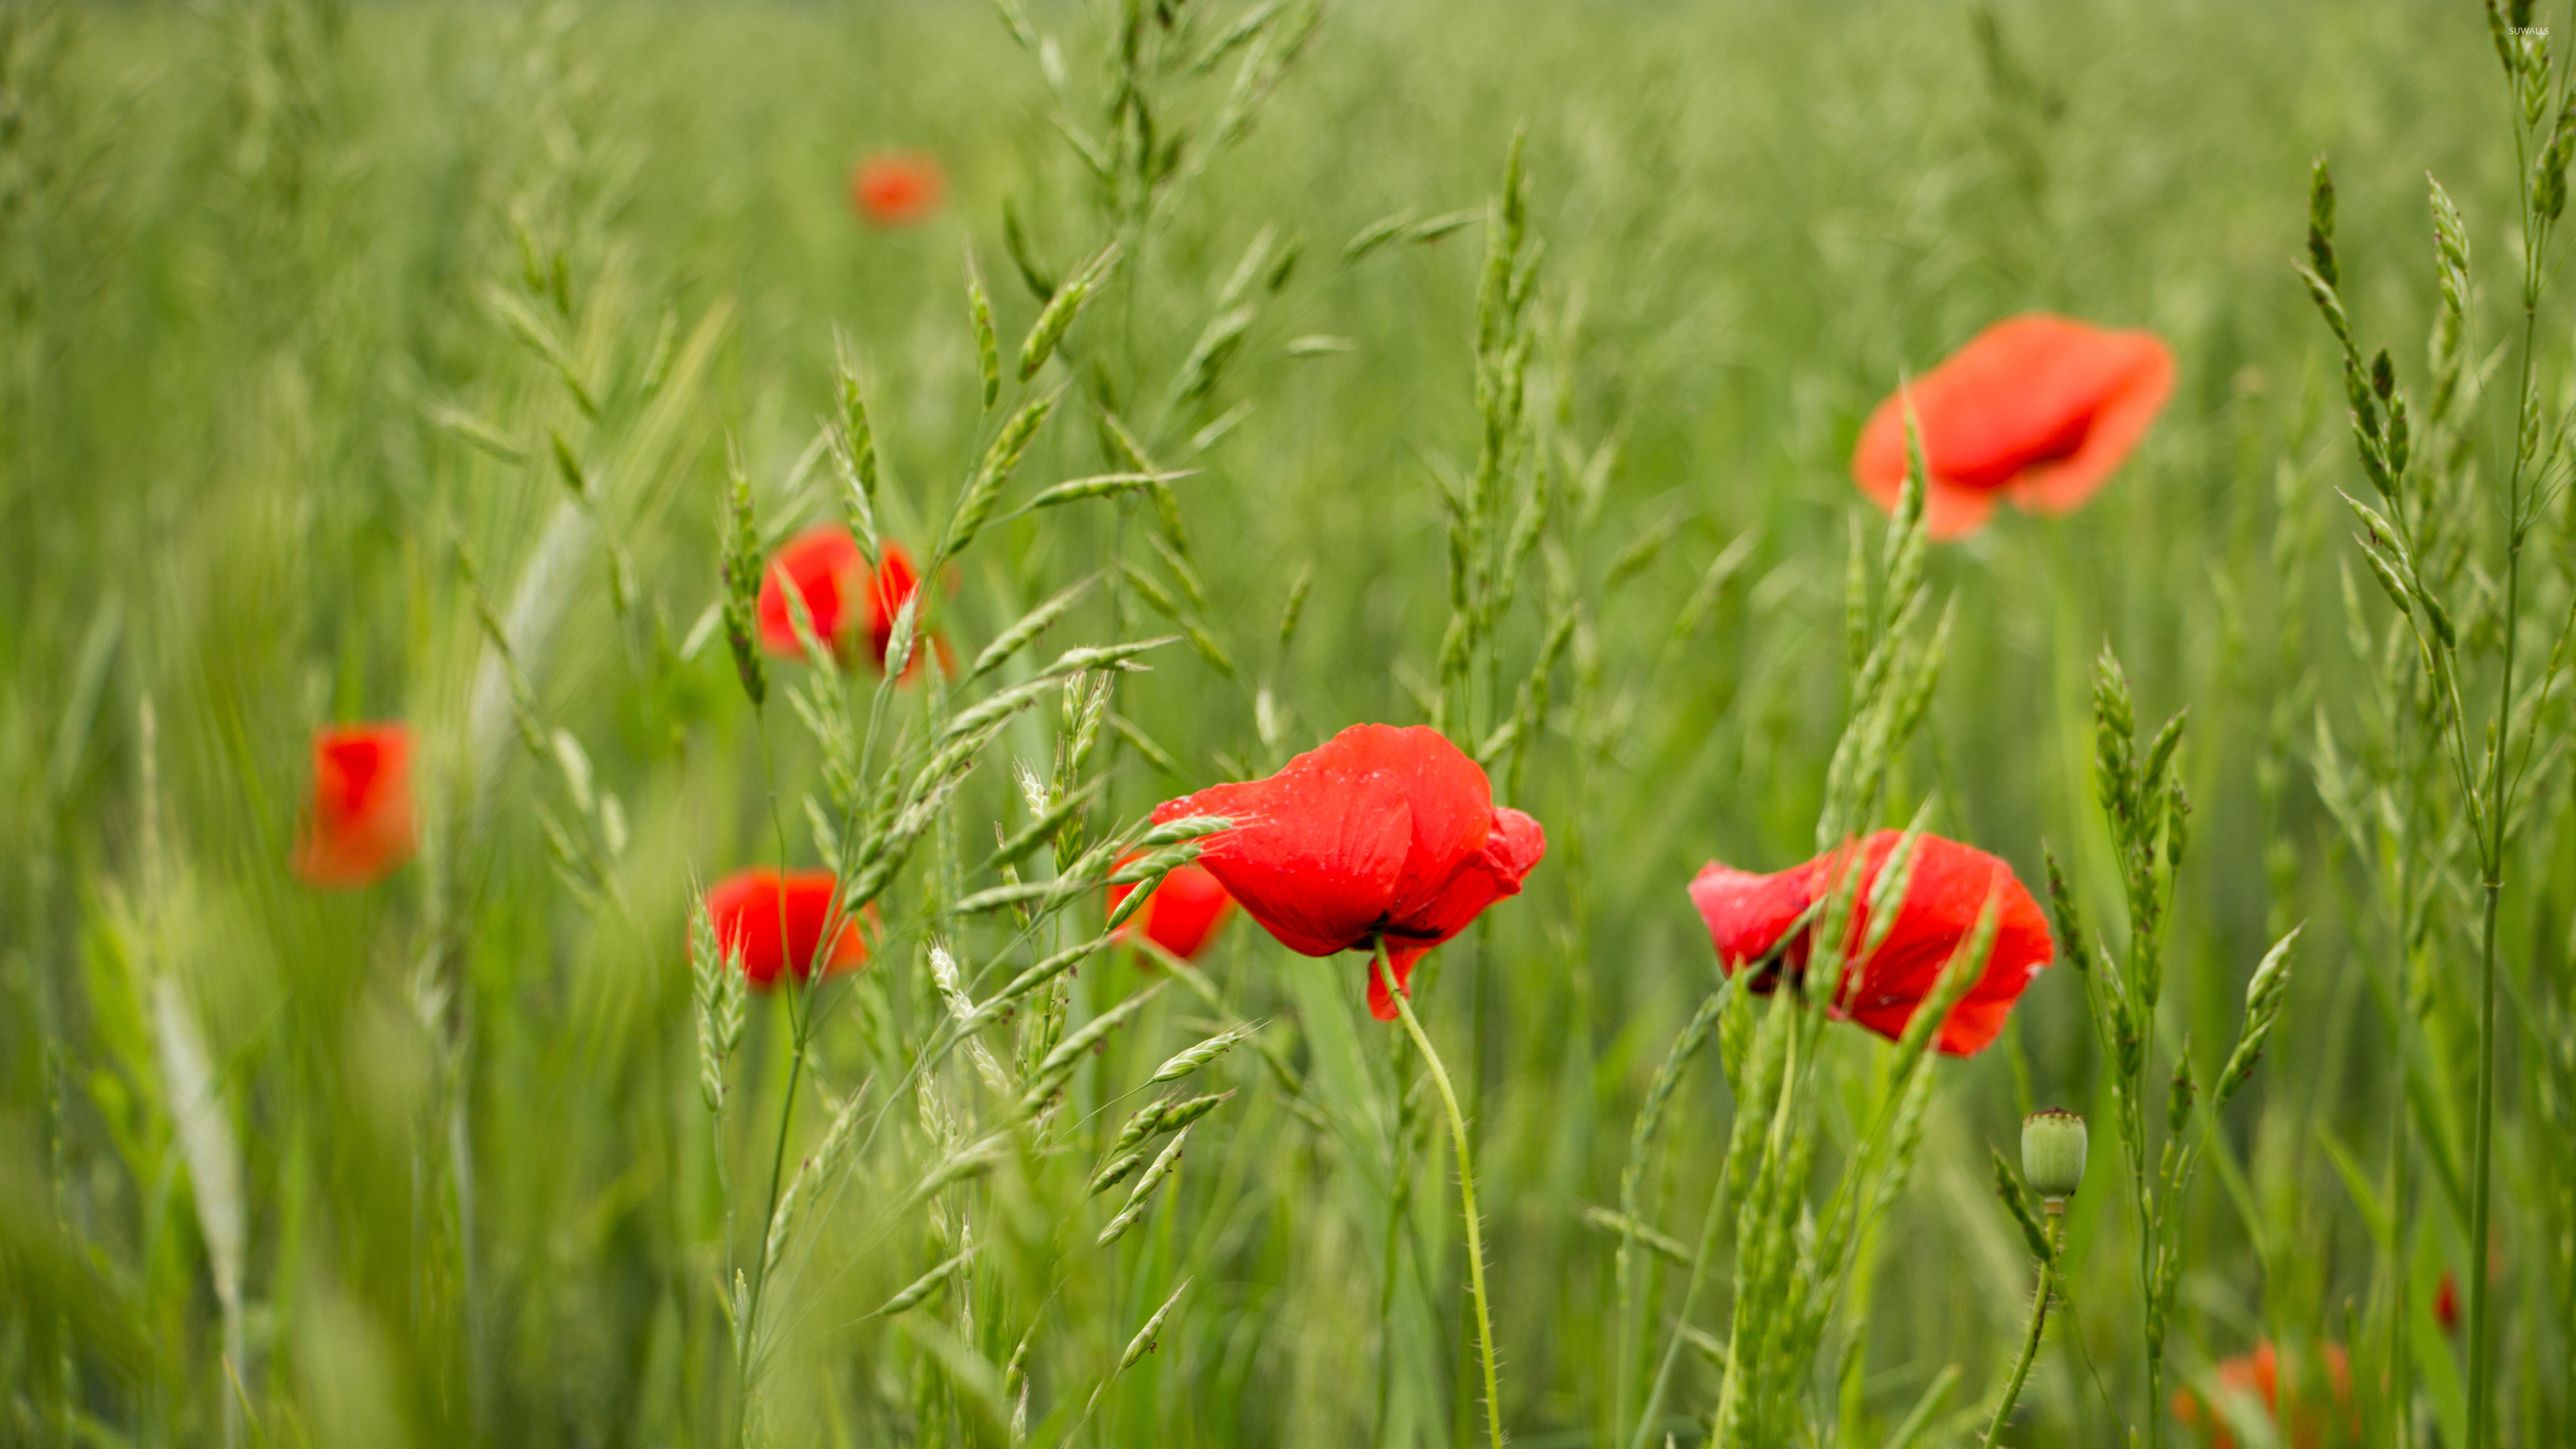 Flower Field: Poppies, Meadow, Grassland. 3840x2160 4K Wallpaper.